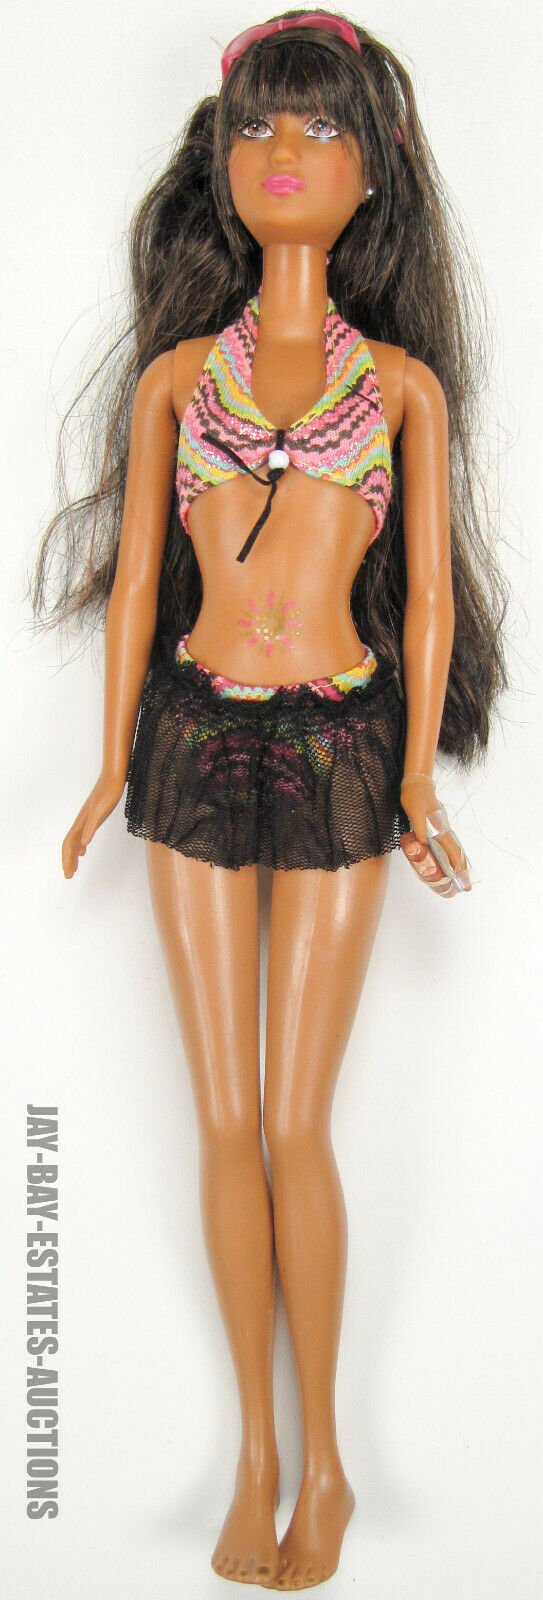 Rare Barbie Doll Beach Fun Lea Tanned Brunette Belly Tattoo J0701 China 2005 A/o